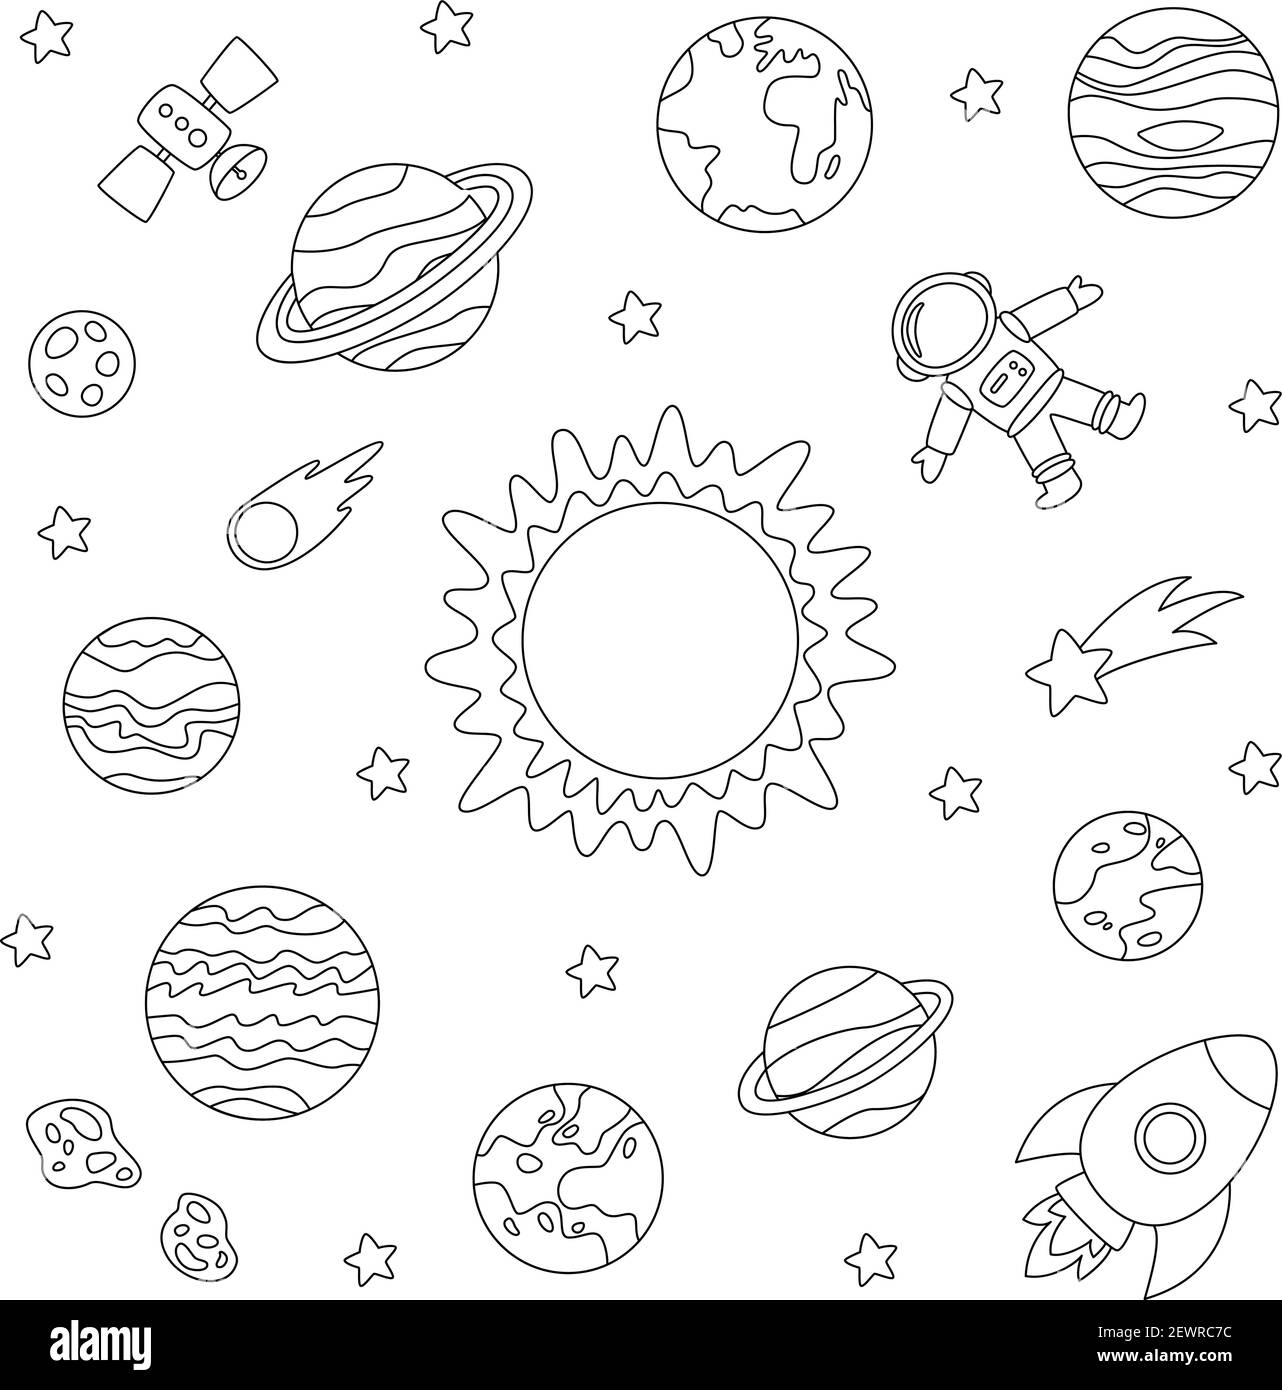 Page de coloriage avec planètes du système solaire. Image en noir et blanc  Image Vectorielle Stock - Alamy